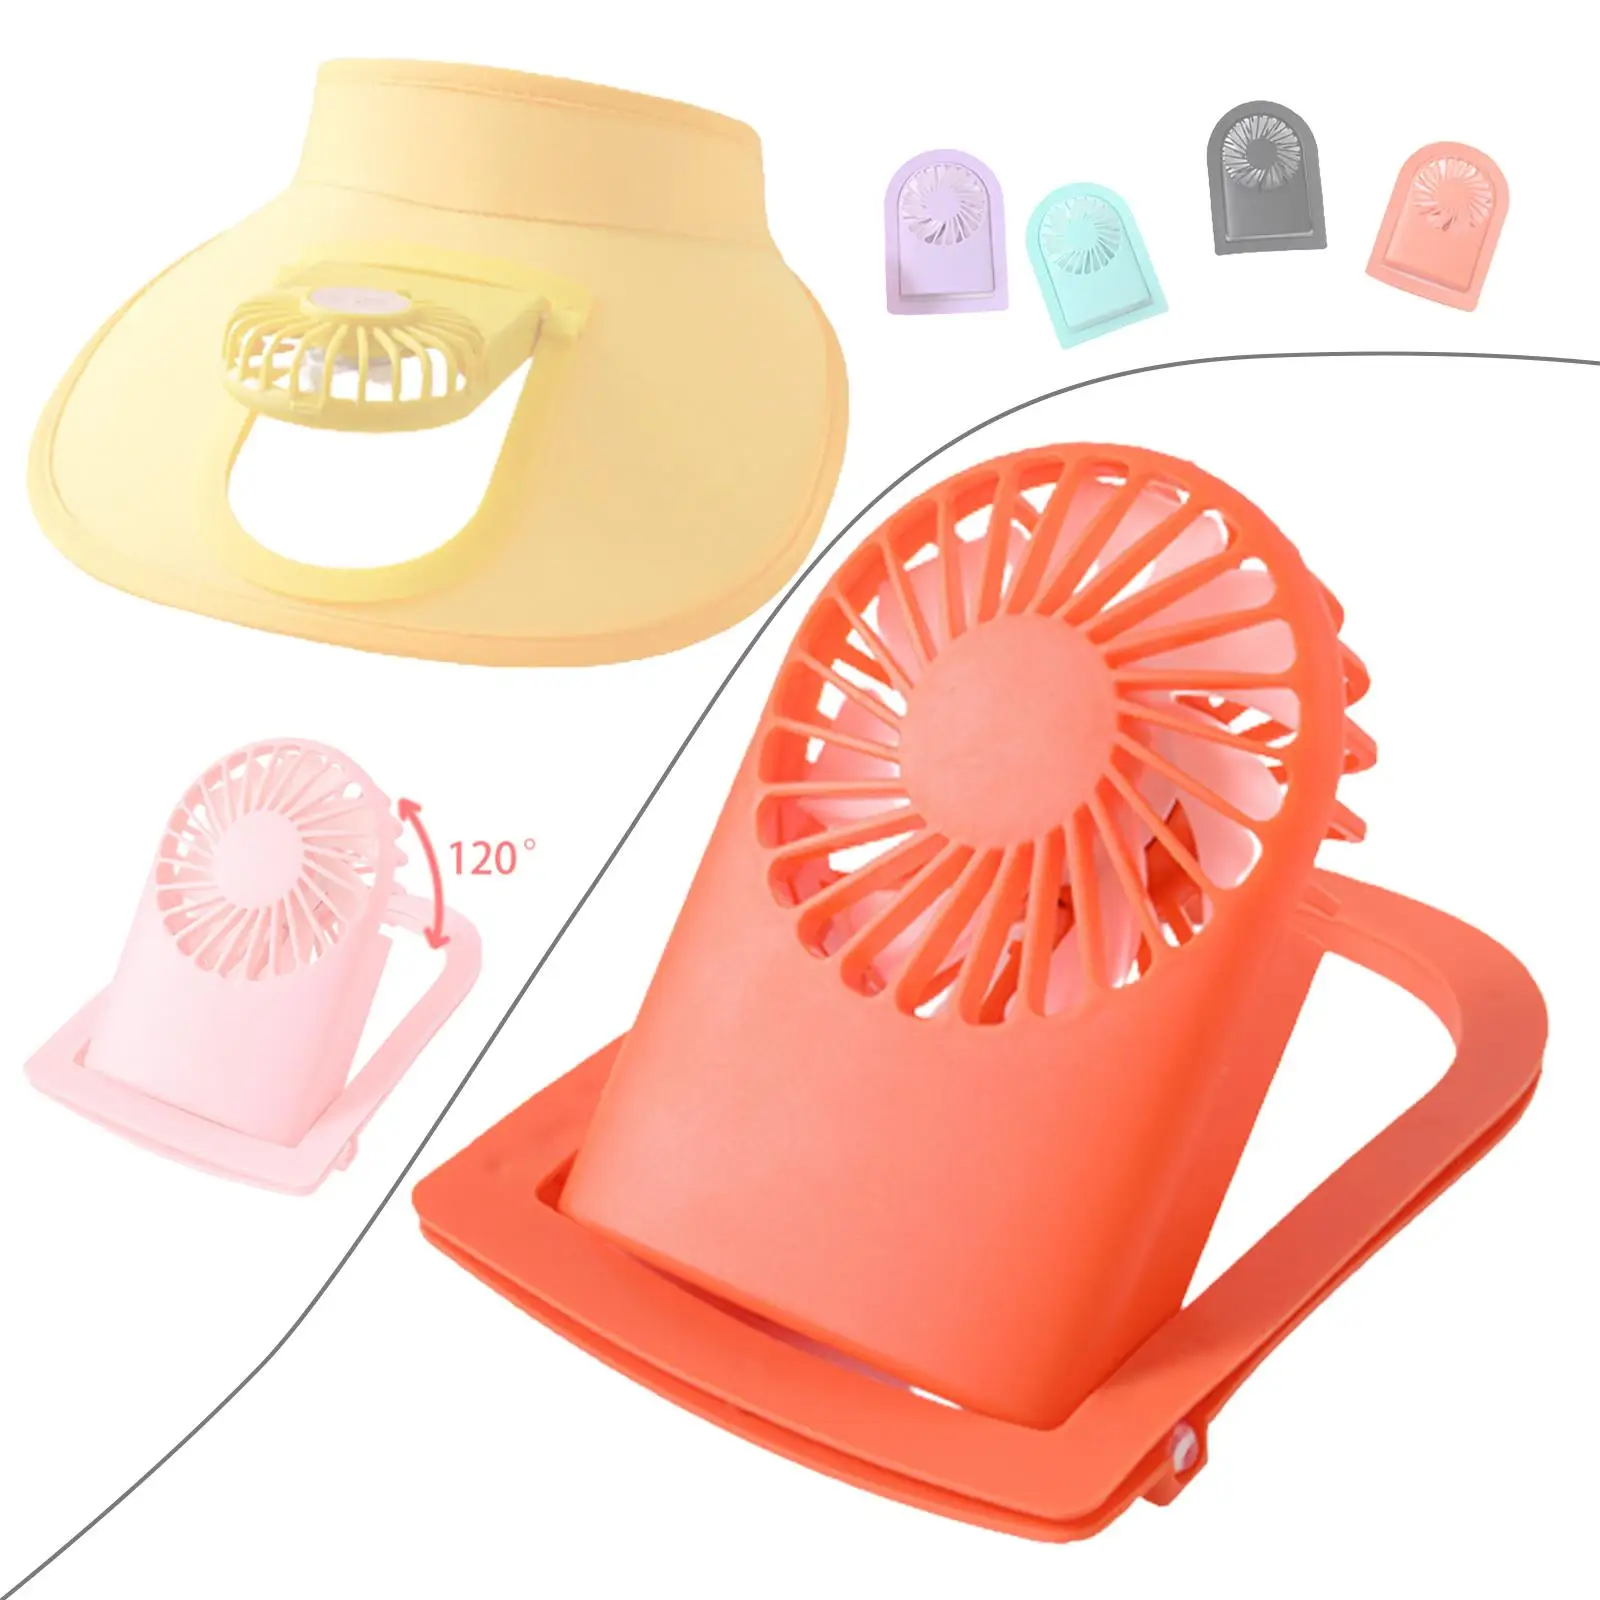 Персональный вентилятор Портативный вентилятор с козырьком Аксессуар для шляпы с регулируемым воздушным охлаждением с питанием от USB, 3 скорости, для походной кухни 5